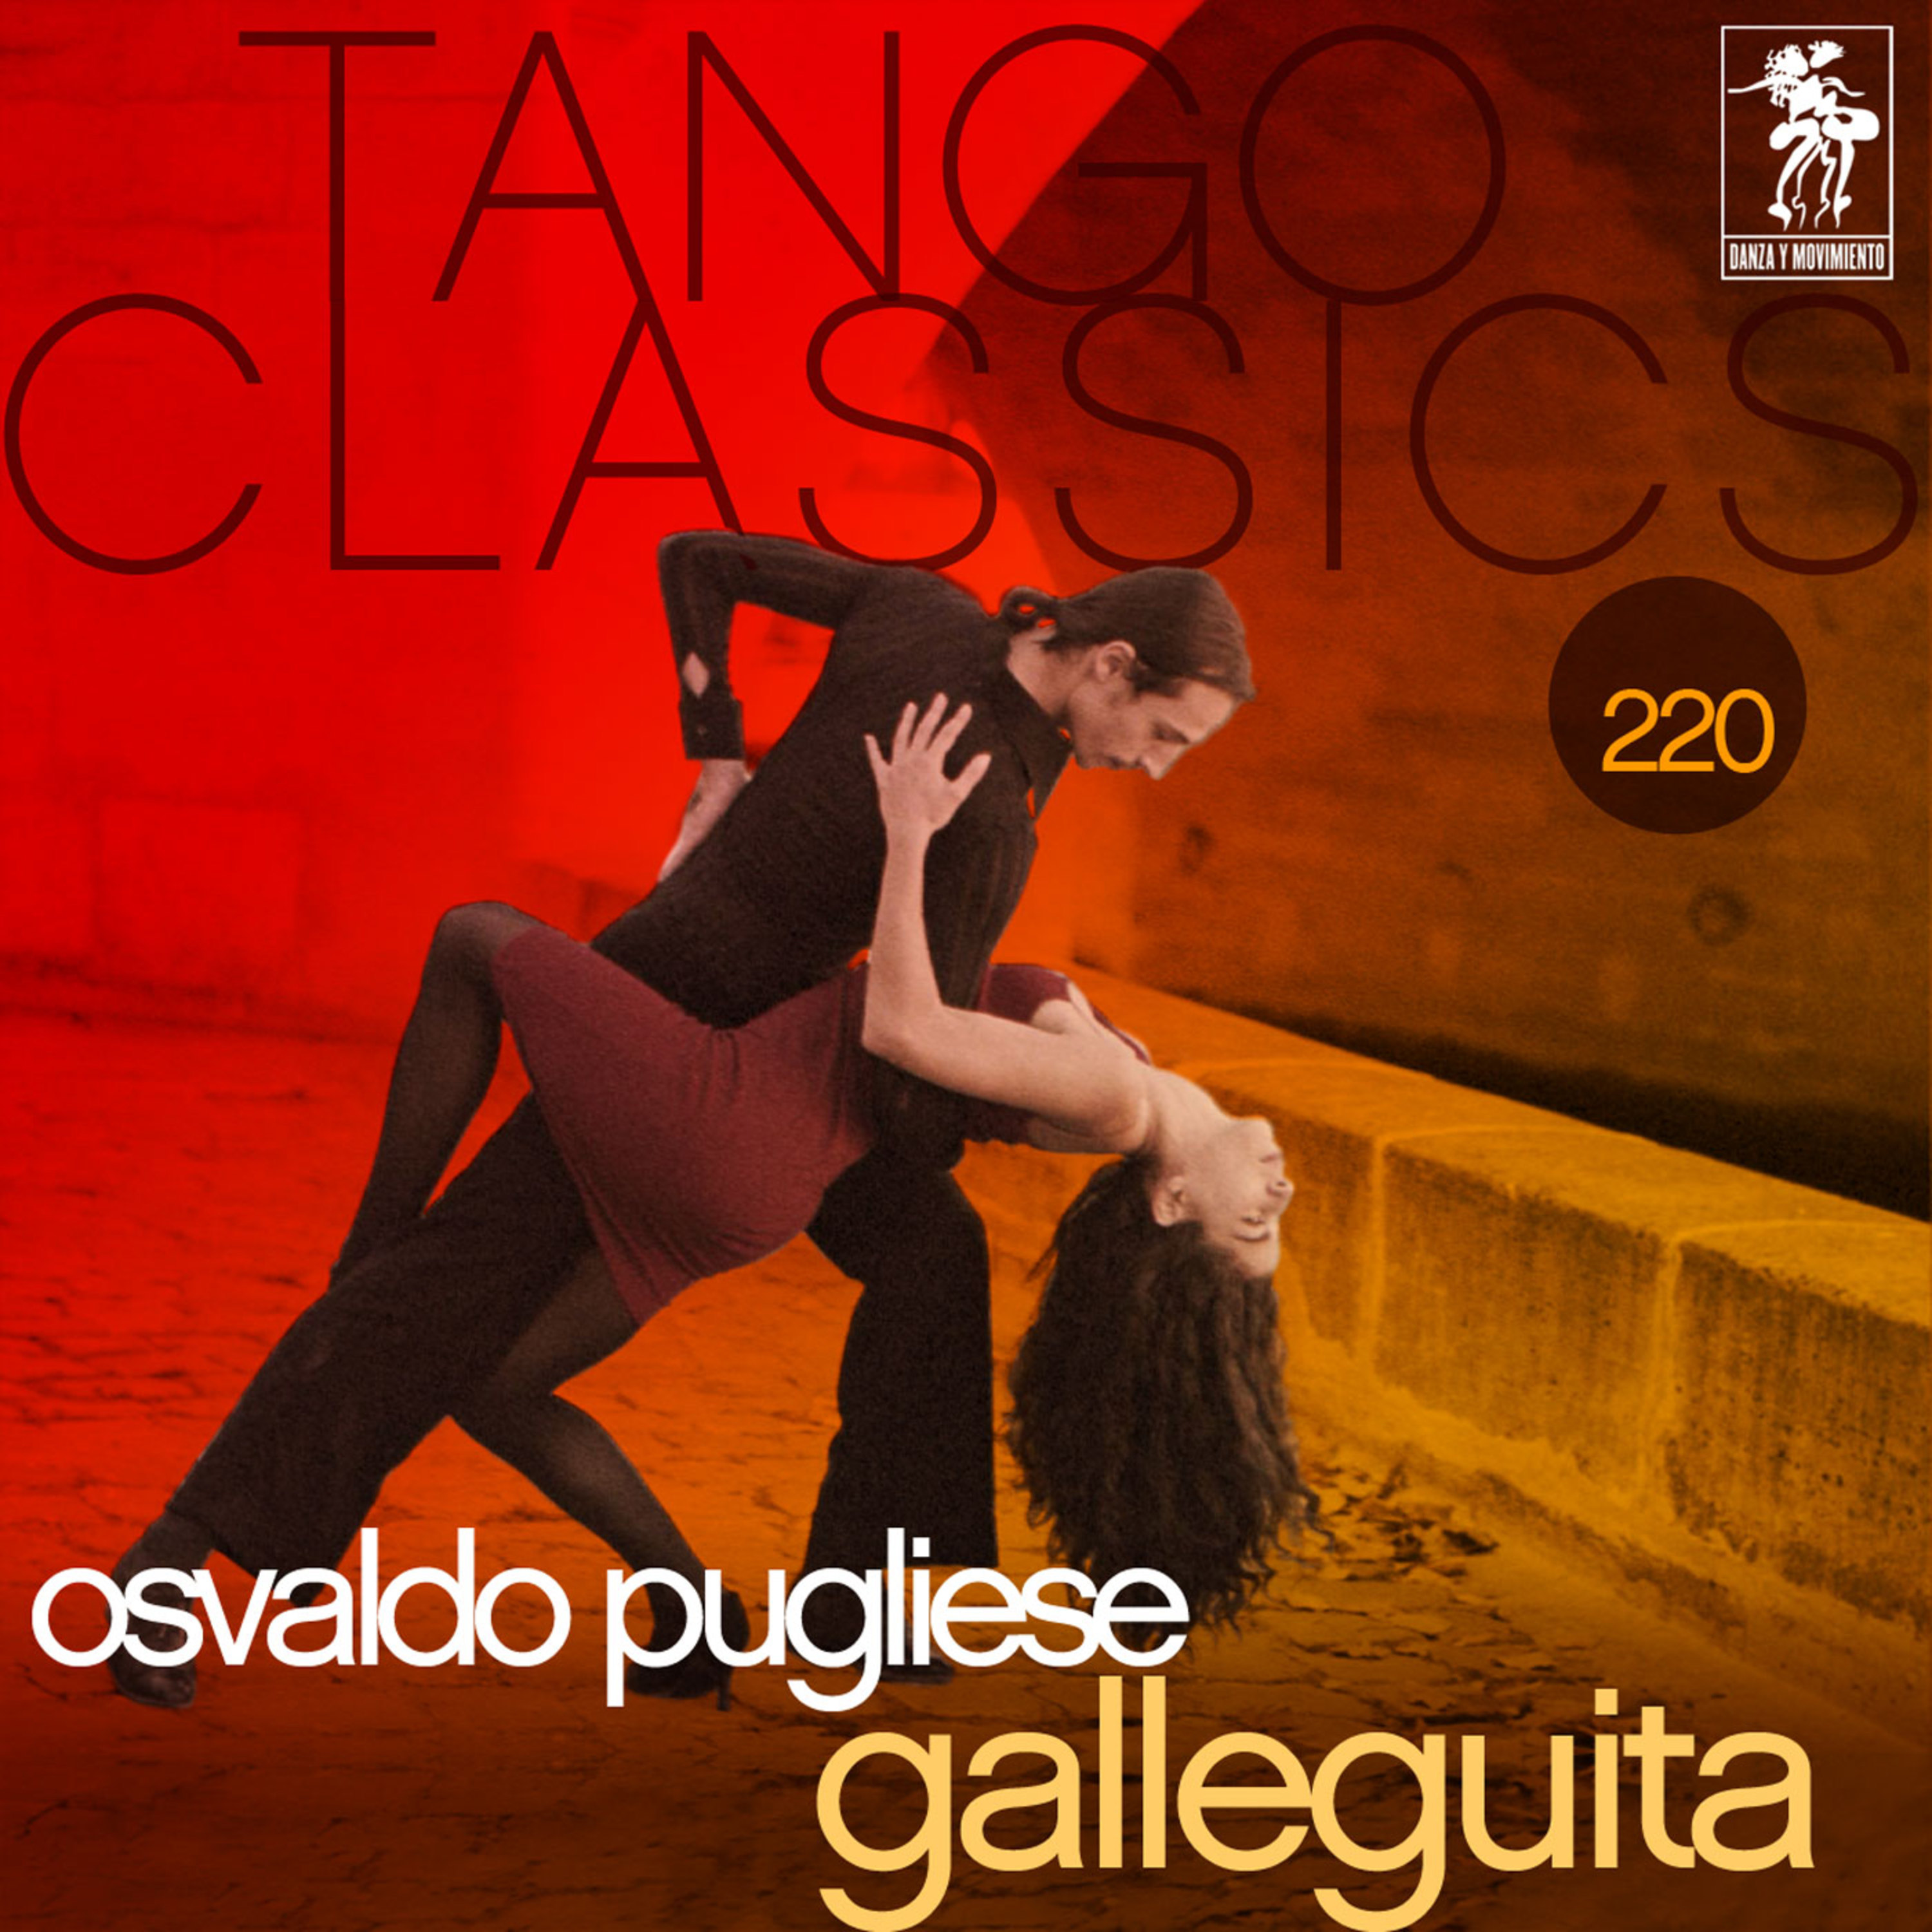 Tango Classics 220: Galleguita